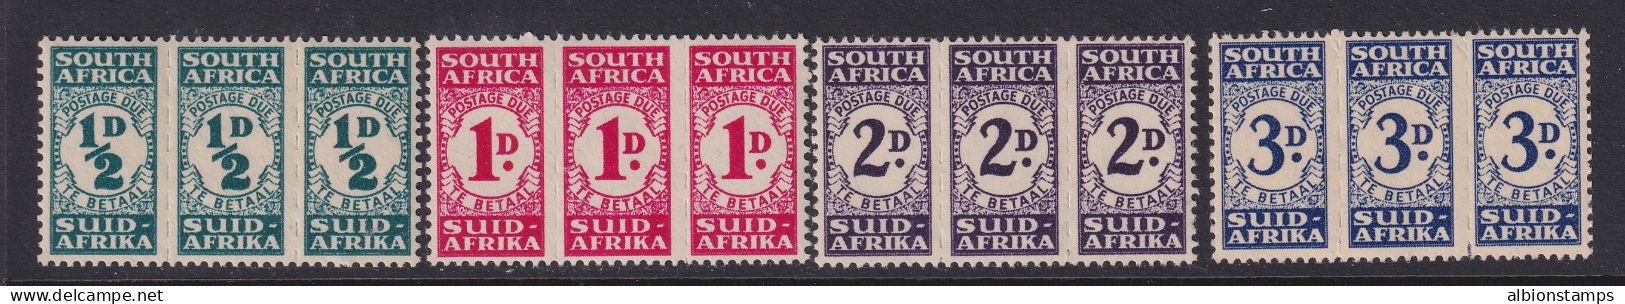 South Africa, Scott J30-J33 (SG D30-D33), MNH - Timbres-taxe